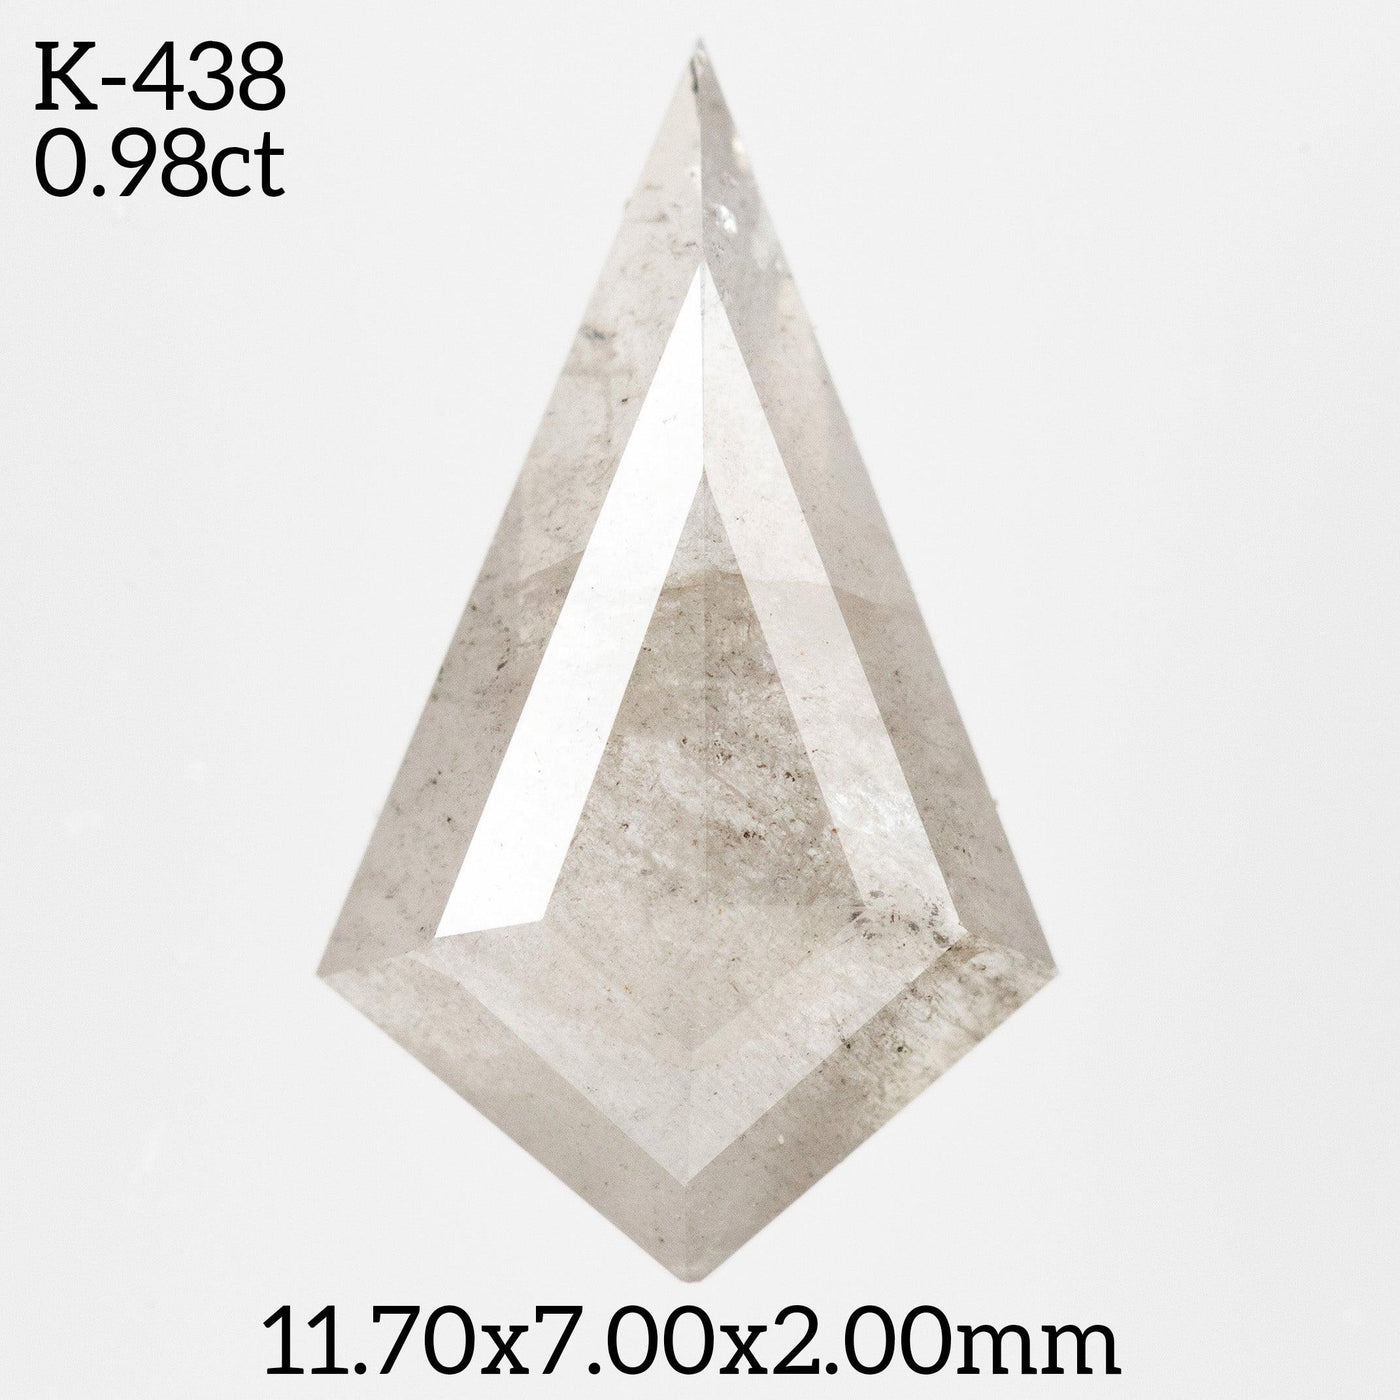 K438 - Salt and pepper kite diamond